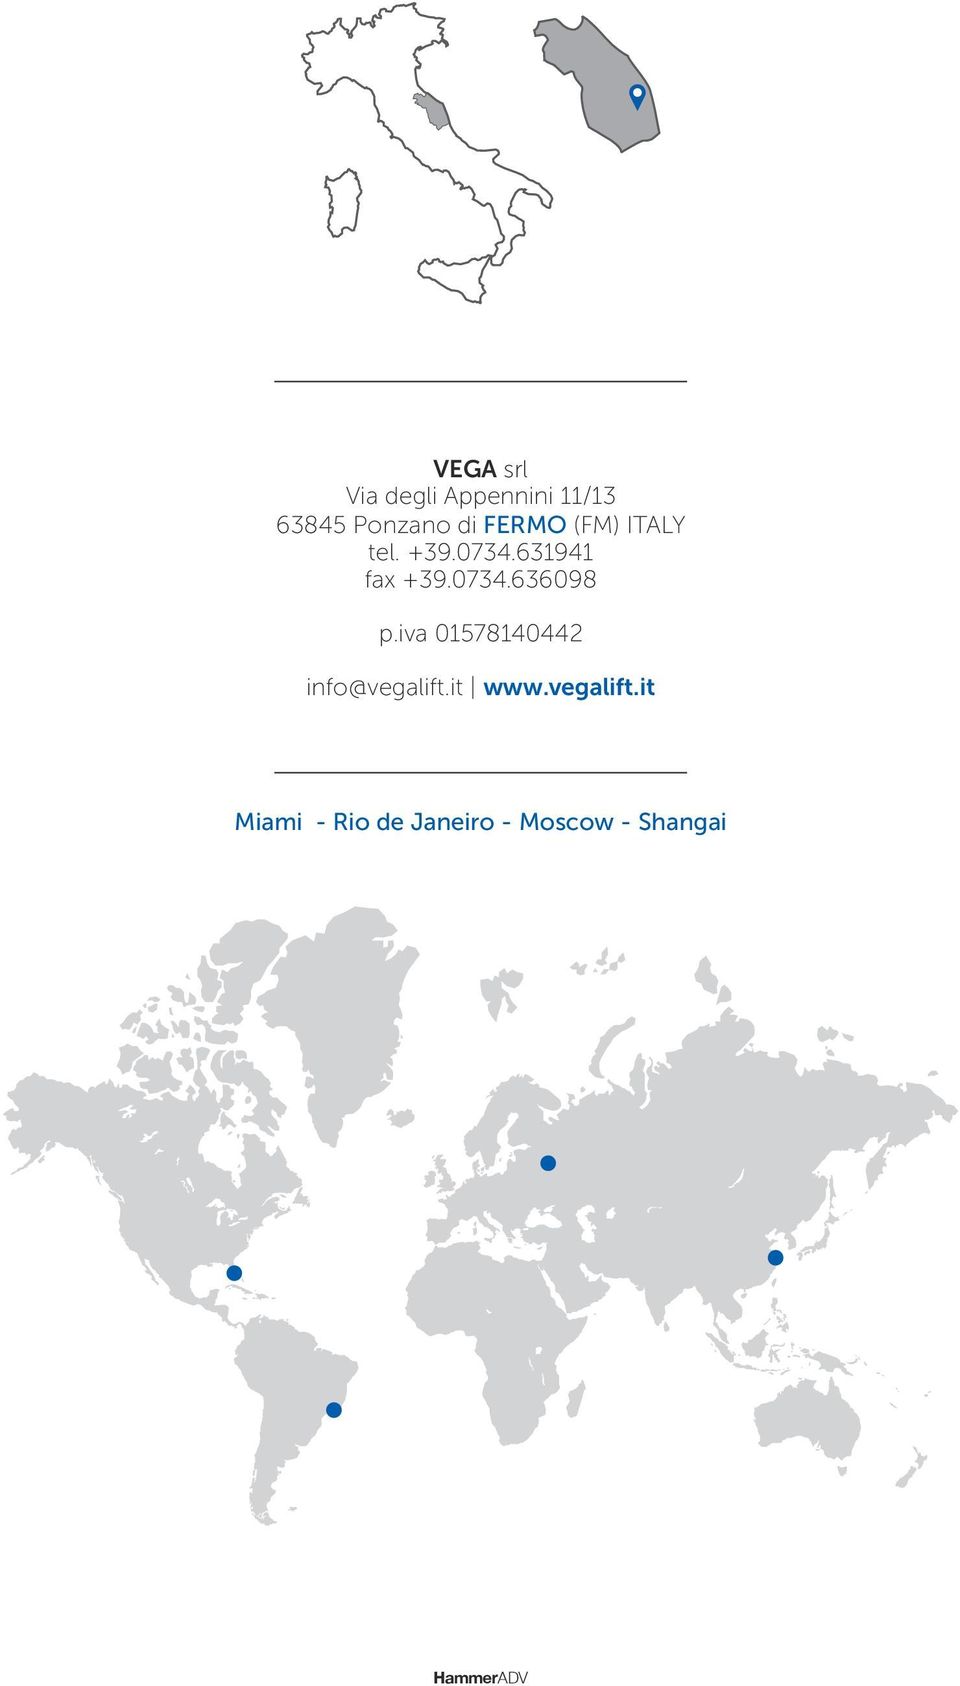 iva 01578140442 info@vegalift.